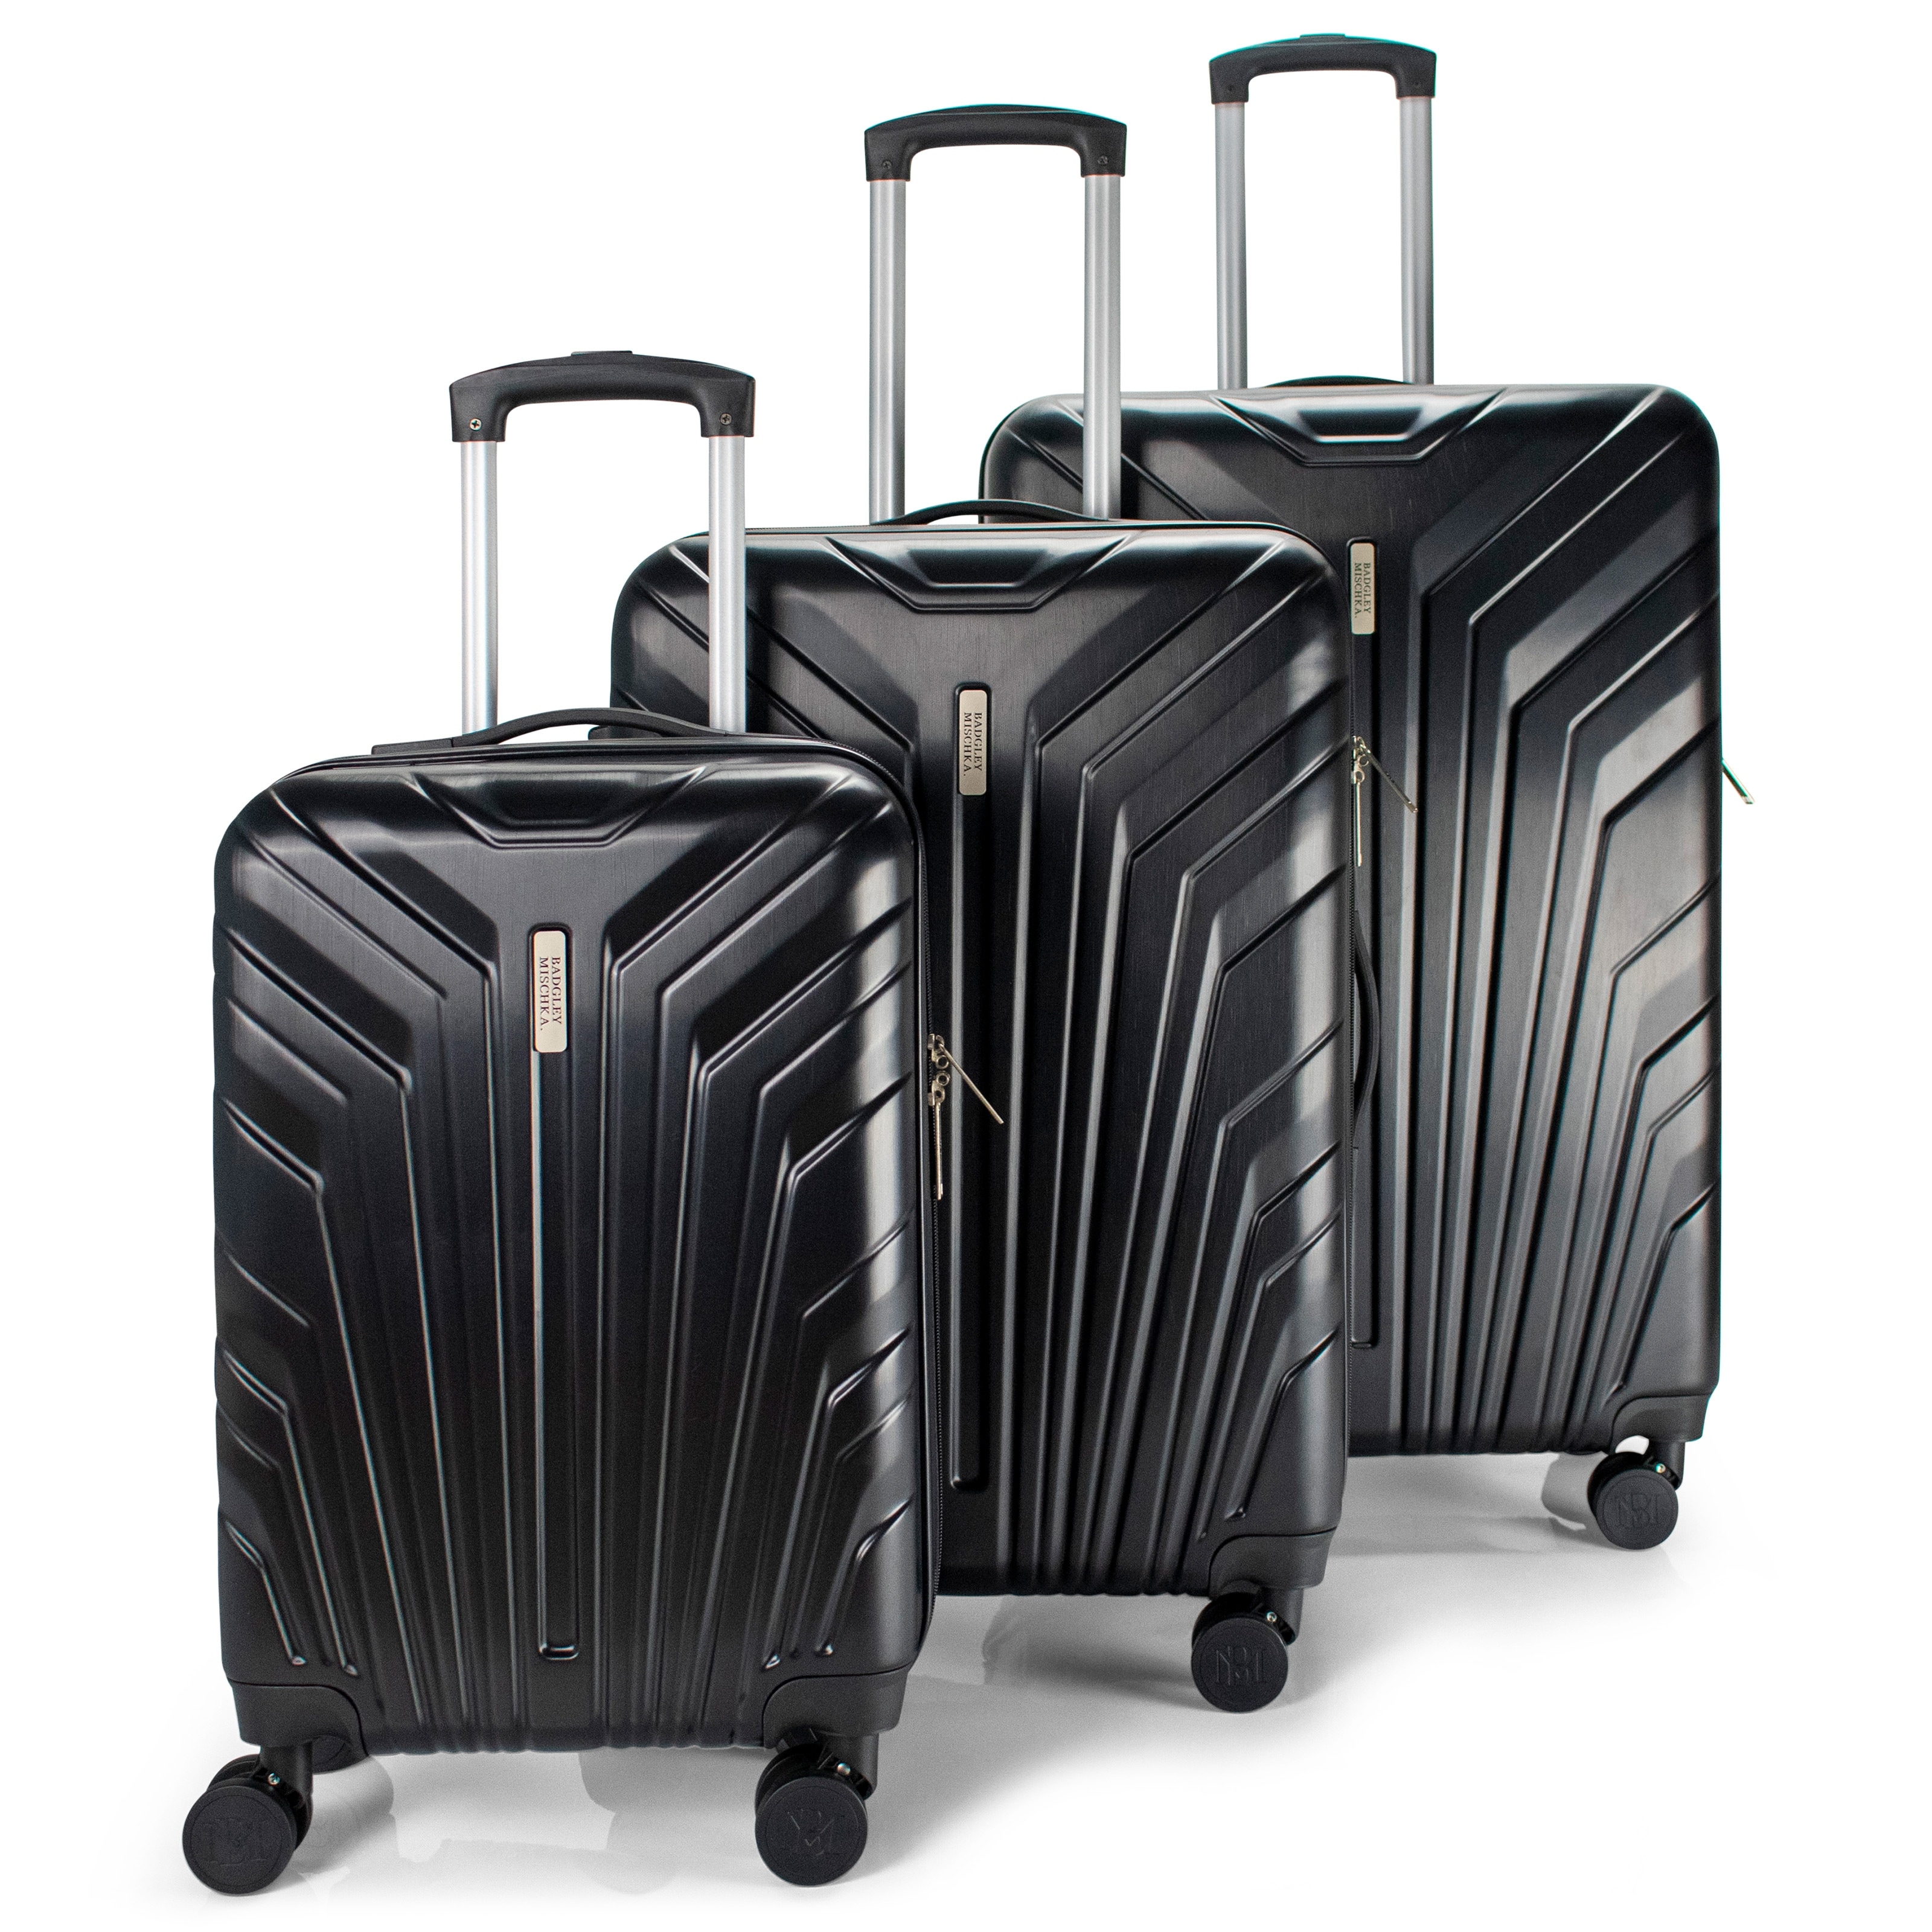 BADGLEY MISCHKA Wonder 3 Piece Expandable Luggage Set